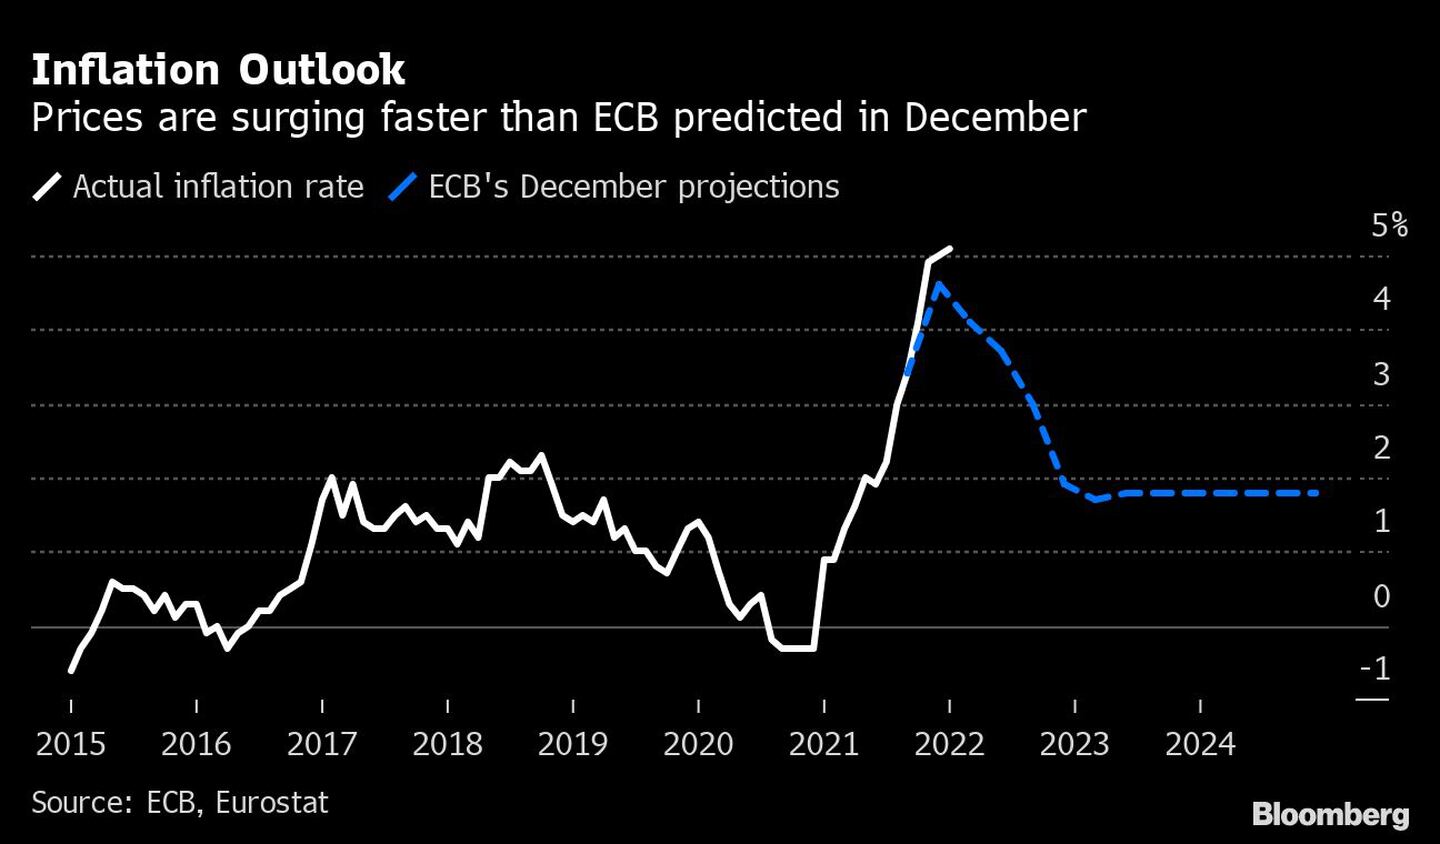 Perspectivas de inflación
Los precios están subiendo más que las proyecciones del BCE de diciembre
Blanco: Tasa de inflación real
Azul: Proyecciones de diciembre del BCEdfd